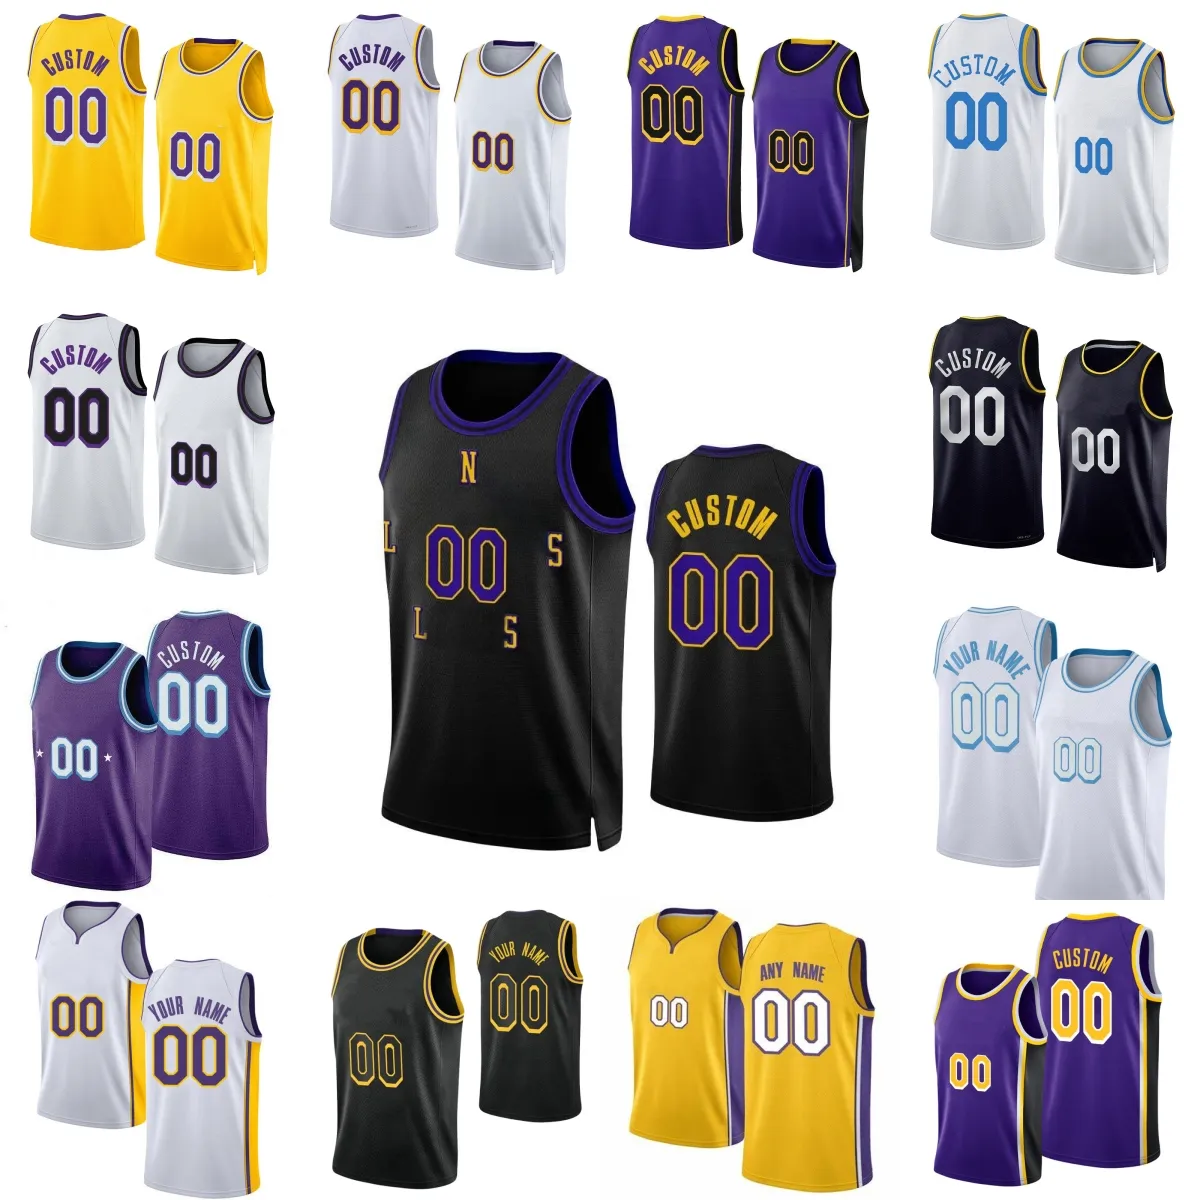 Anpassad 2023-24 Ny säsong tryckt basket 23 LeBron James Jersey White Gold Purple Black Jerseys. Meddela valfritt nummer och namn på beställningen